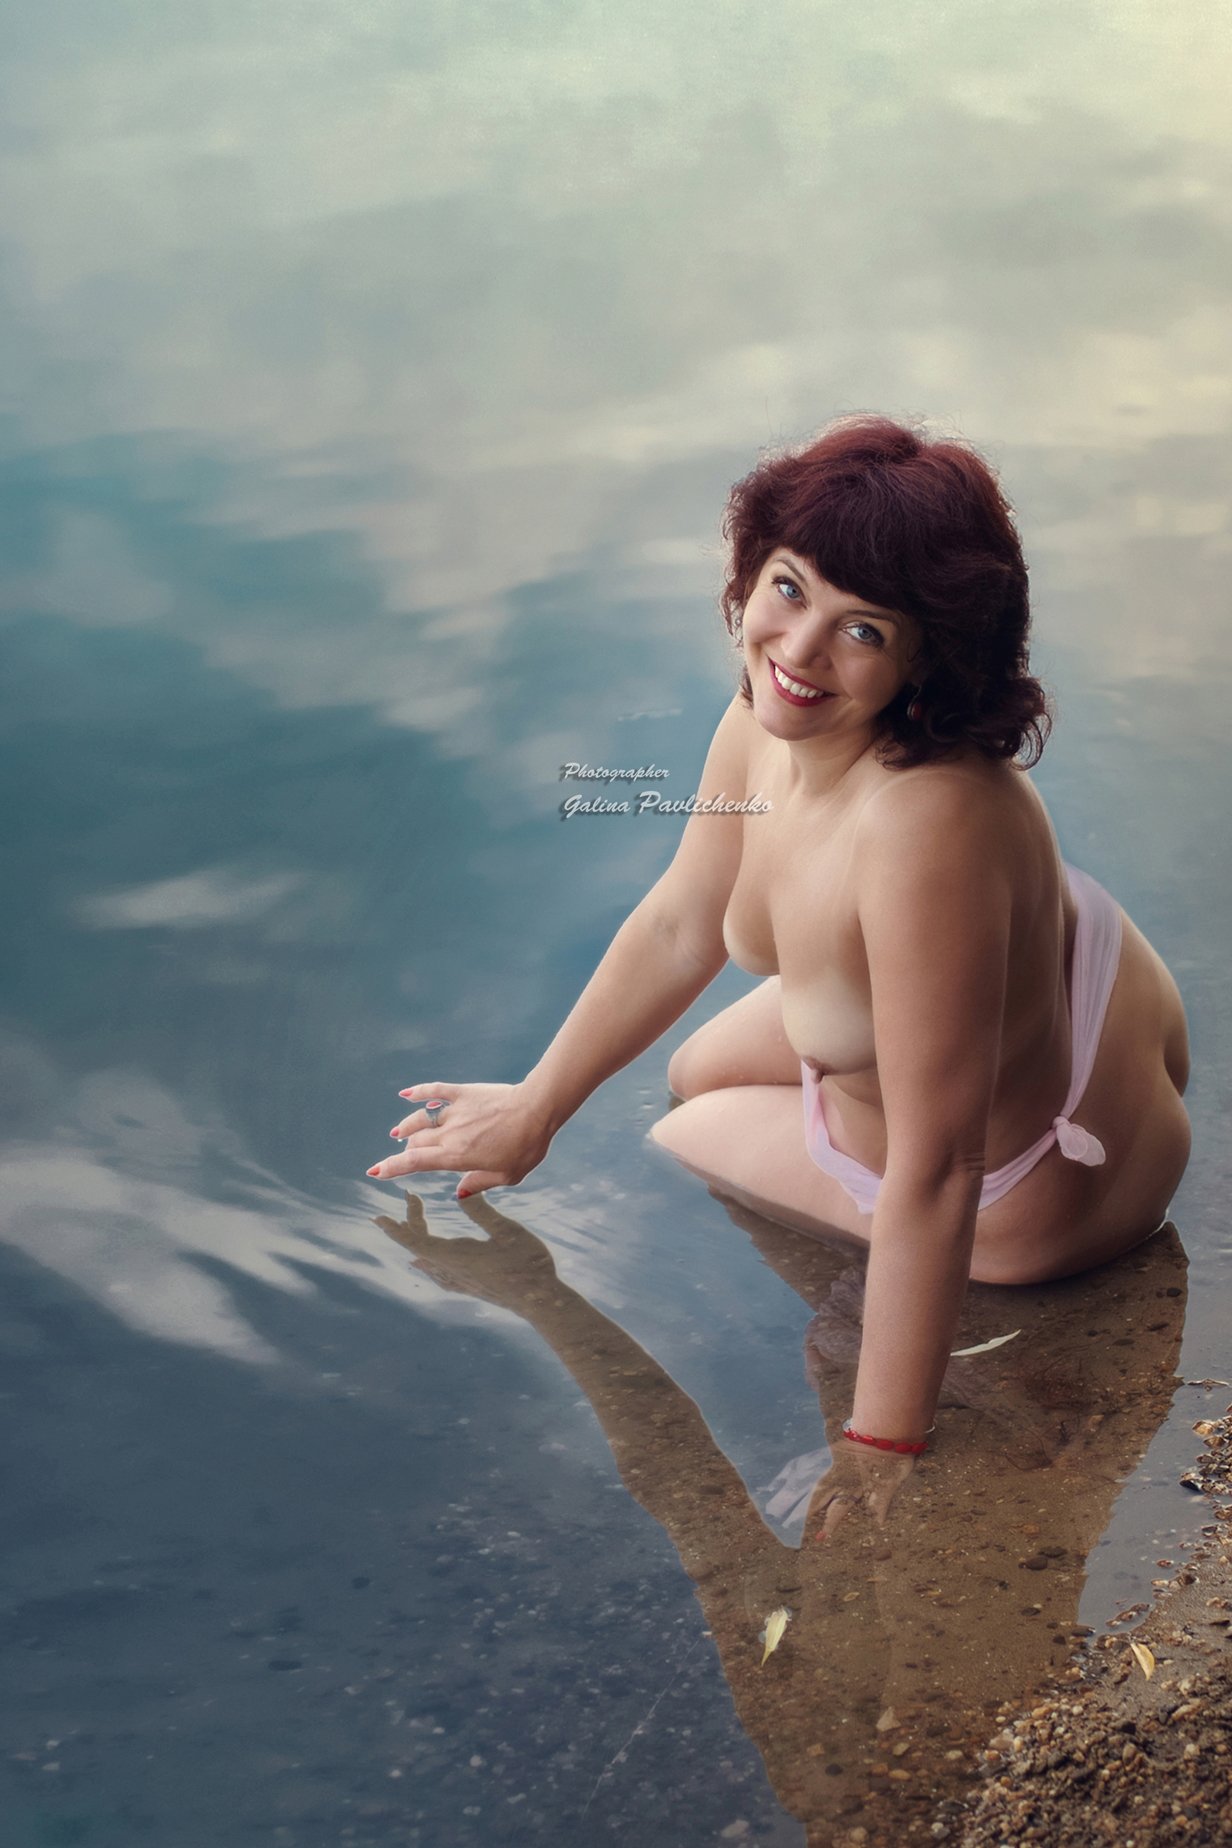 Очаровательная купальщица с торчащими сосками. (20 фото) » Фаномания - эротика и приколы